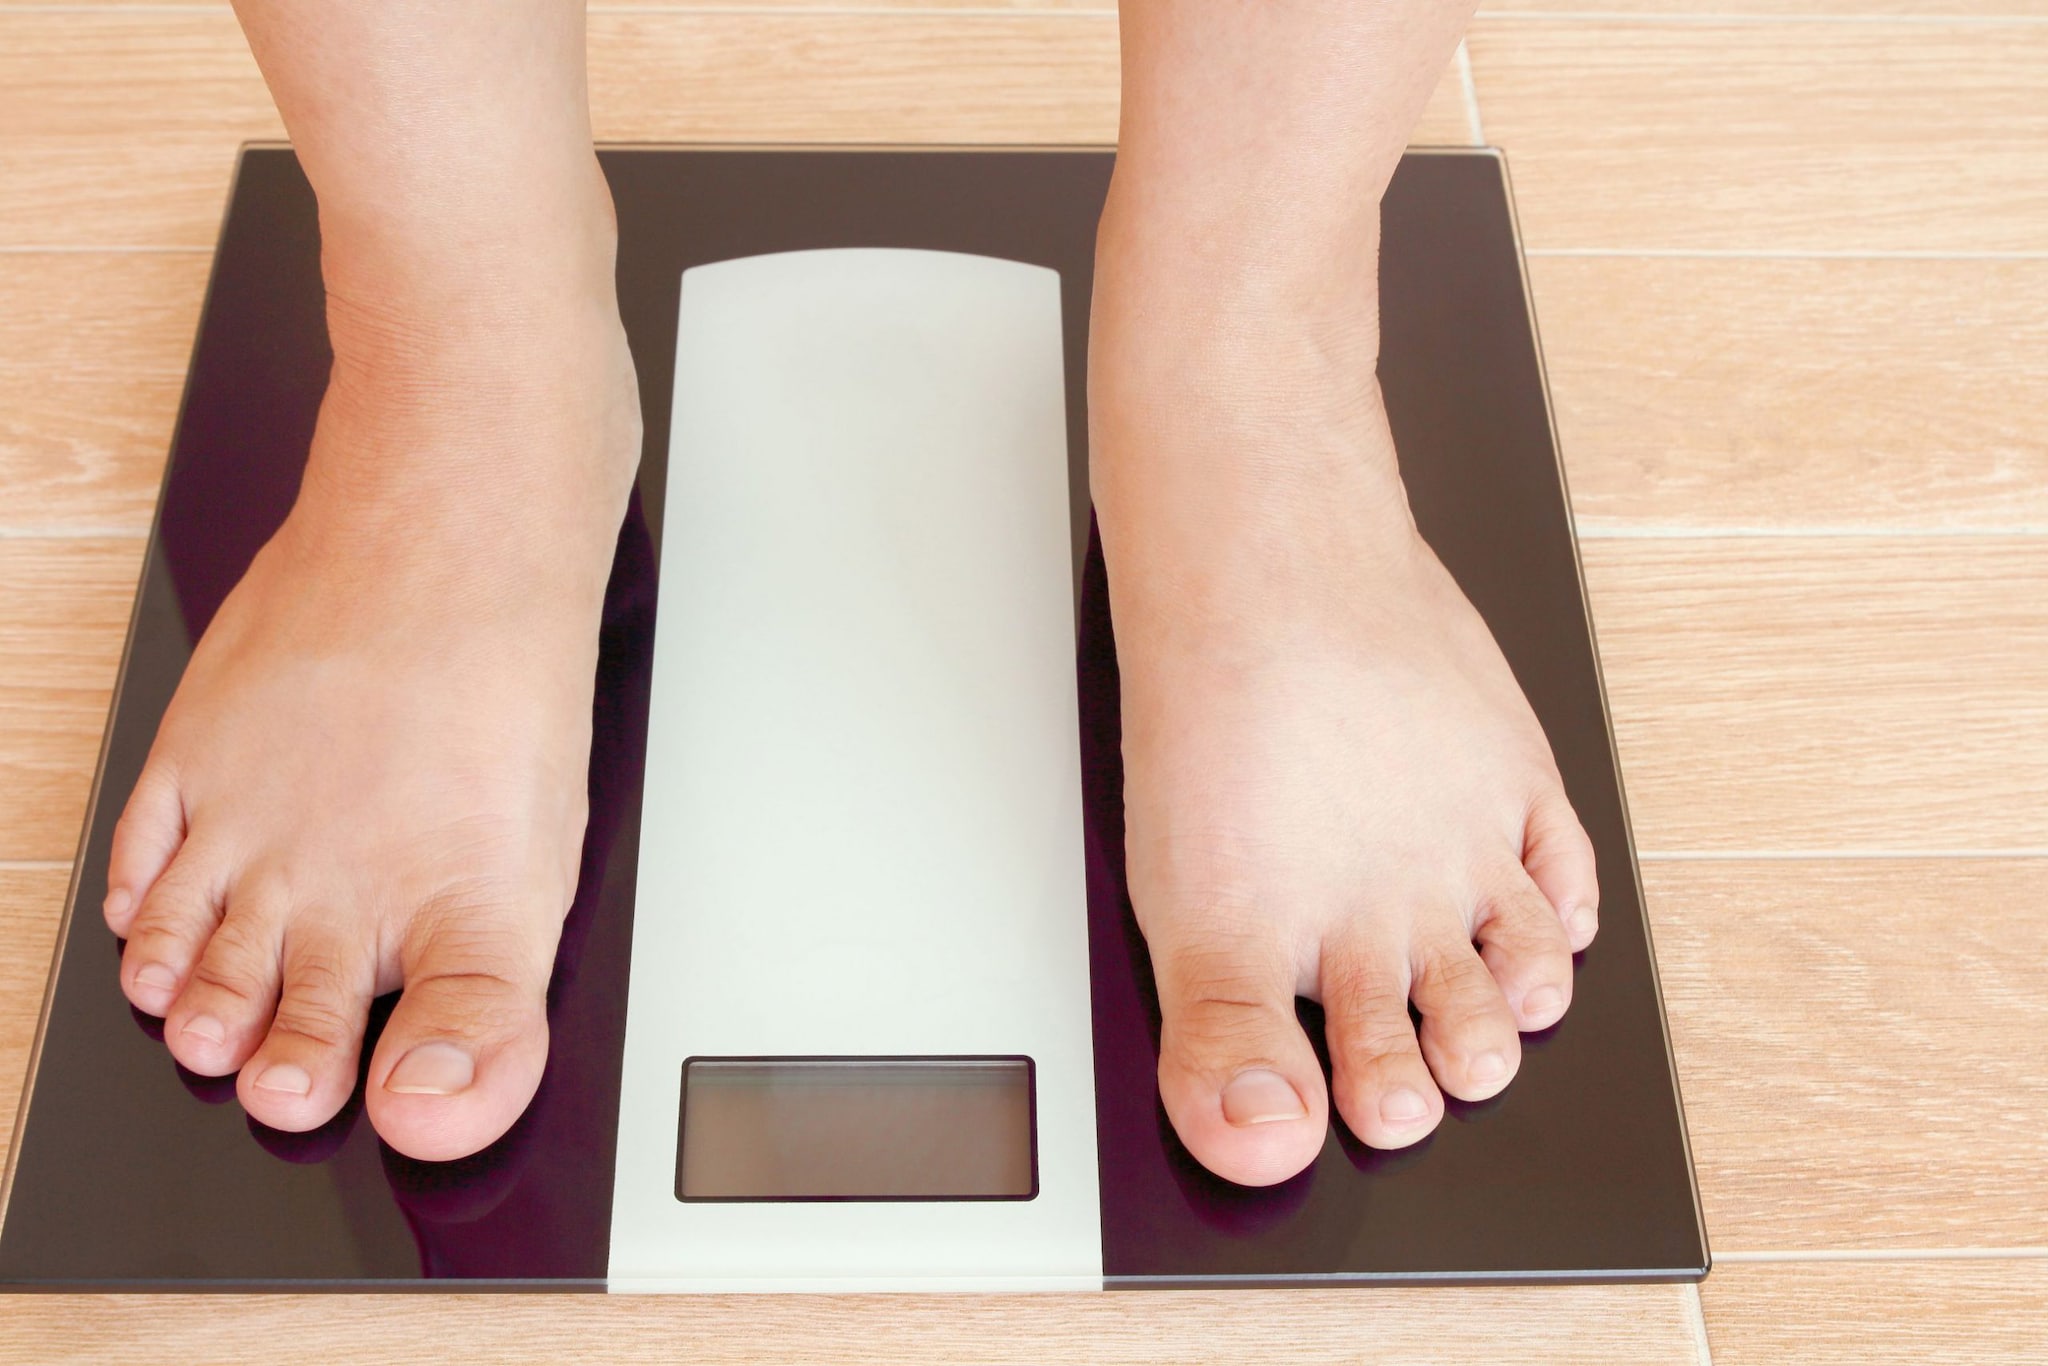 Acerca del índice de masa corporal para adultos